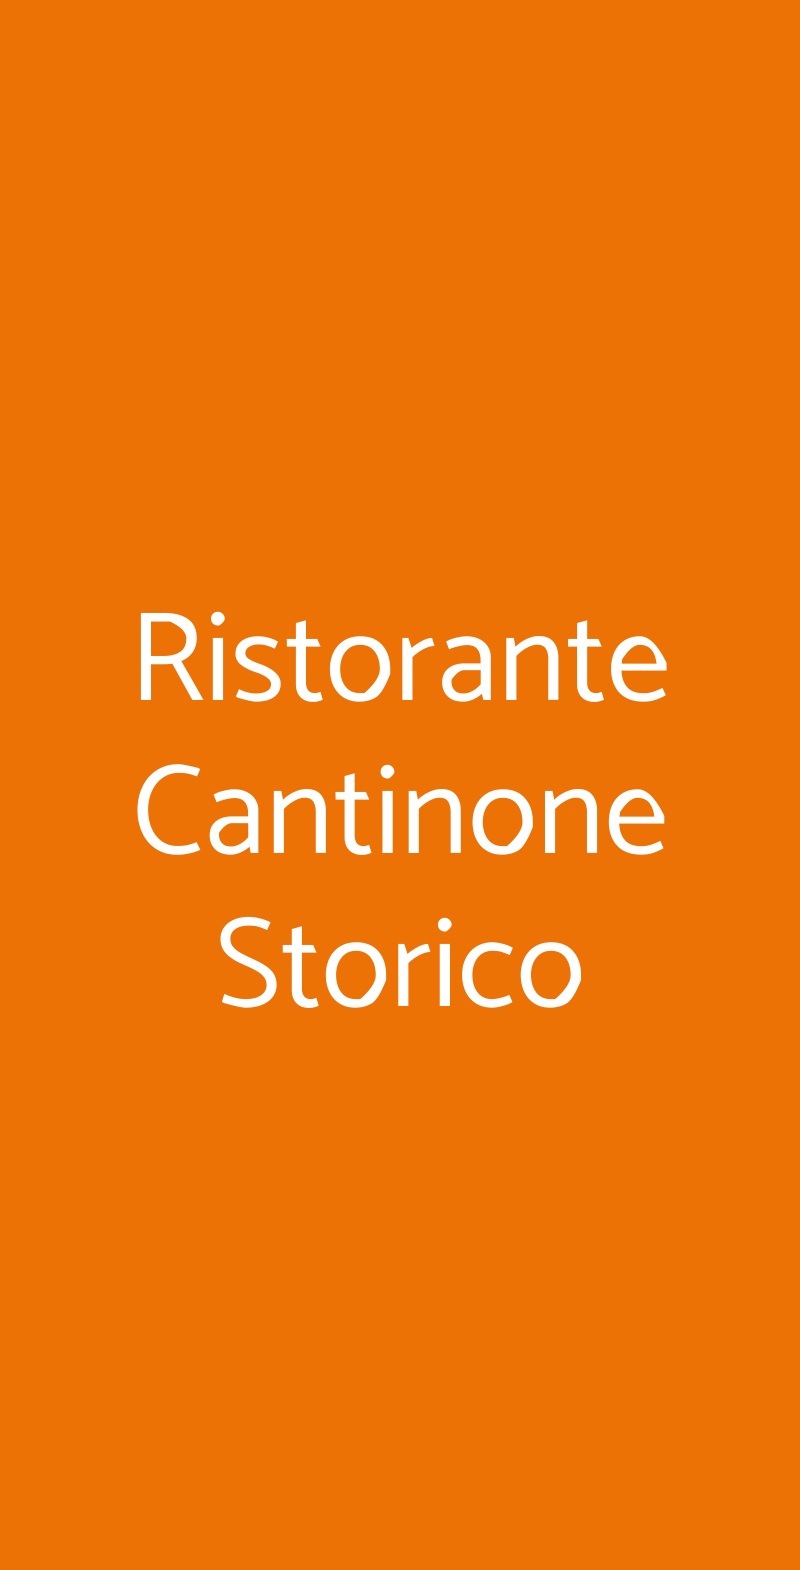 Ristorante Cantinone Storico Venezia menù 1 pagina